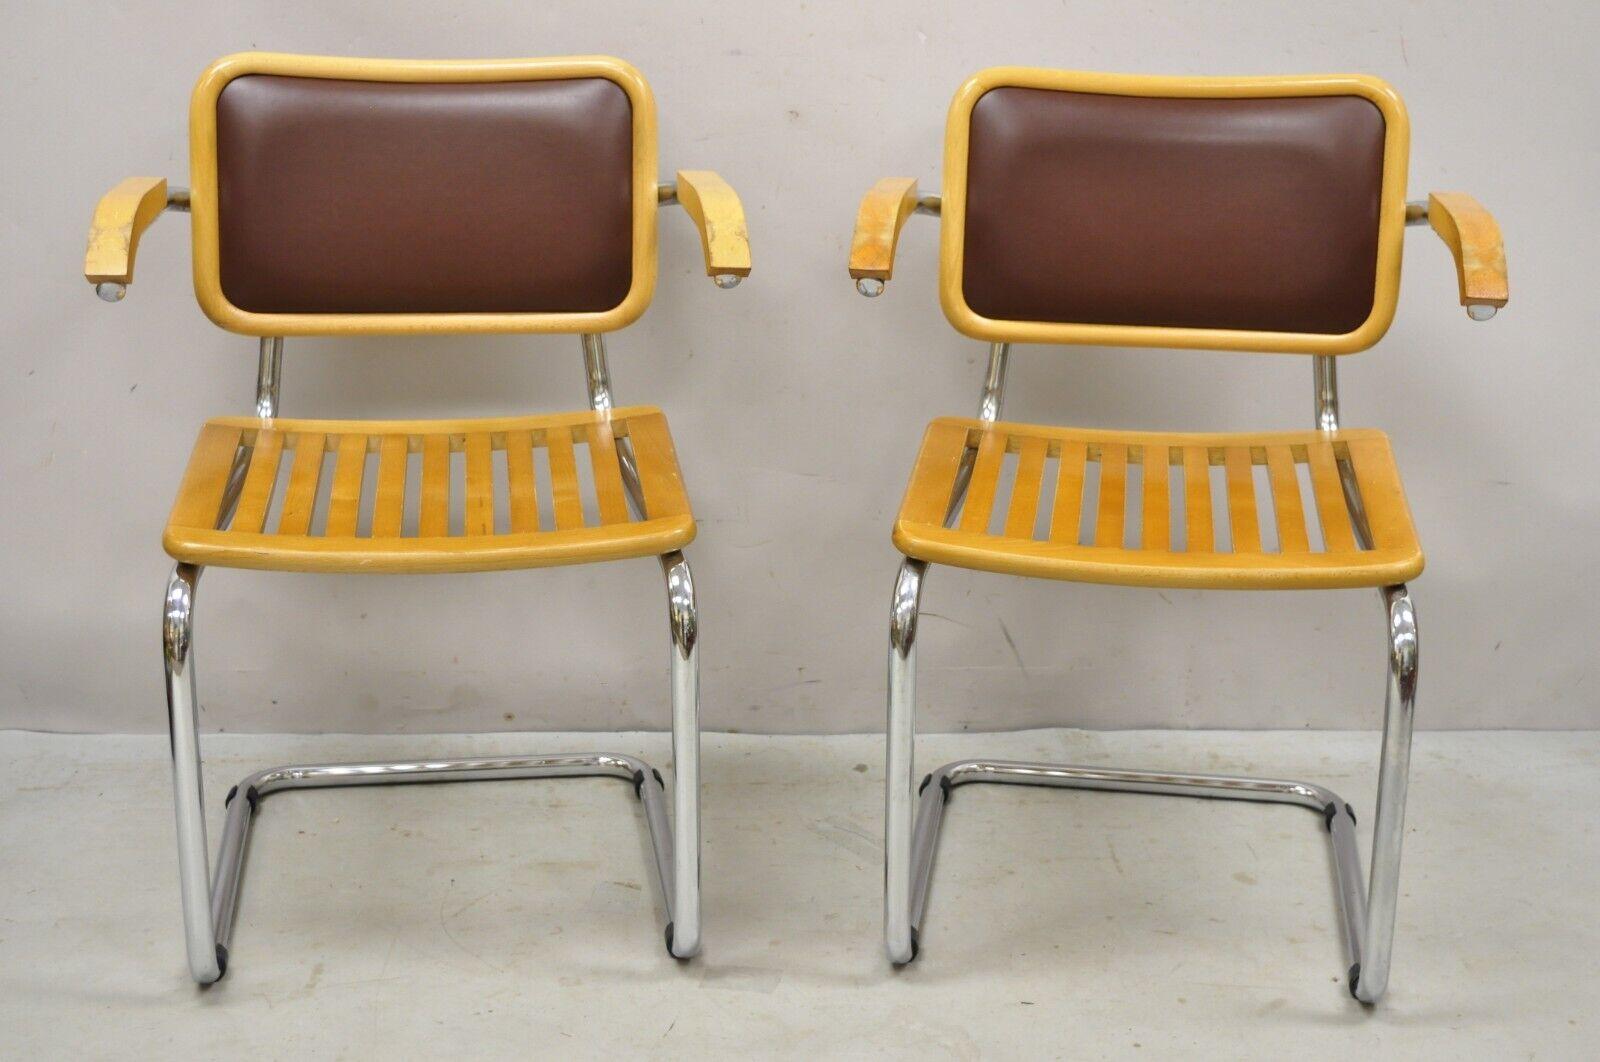 Marcel Breuer Cesca Chair Cantilever Chrome Frame Wood Seat - a Pair. L'article se caractérise par un cadre chromé, un revêtement en vinyle marron, des accoudoirs en bois, des sièges à lattes en bois, des lignes modernistes épurées, un artisanat